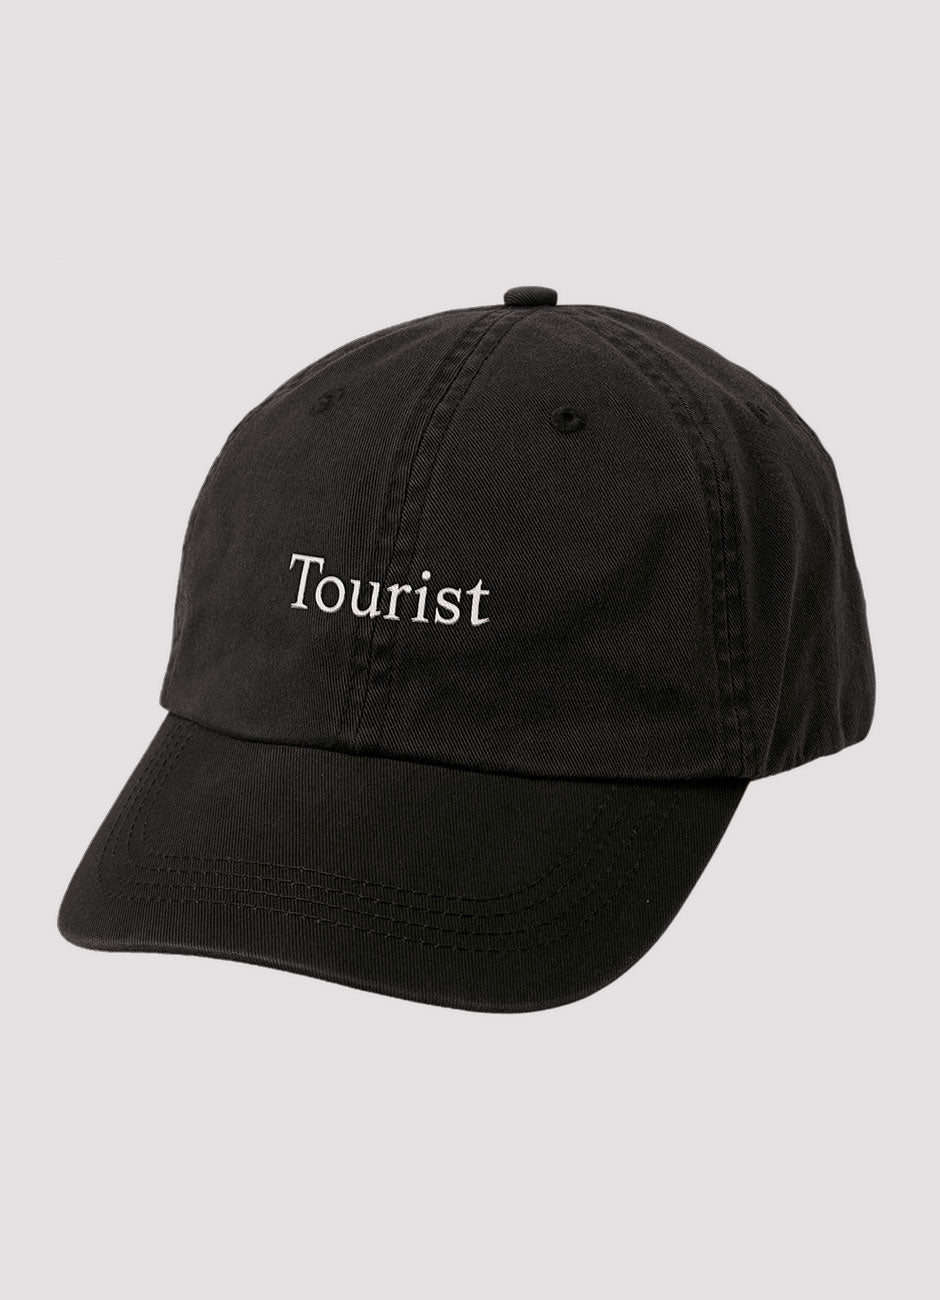 Tourist Black Cap